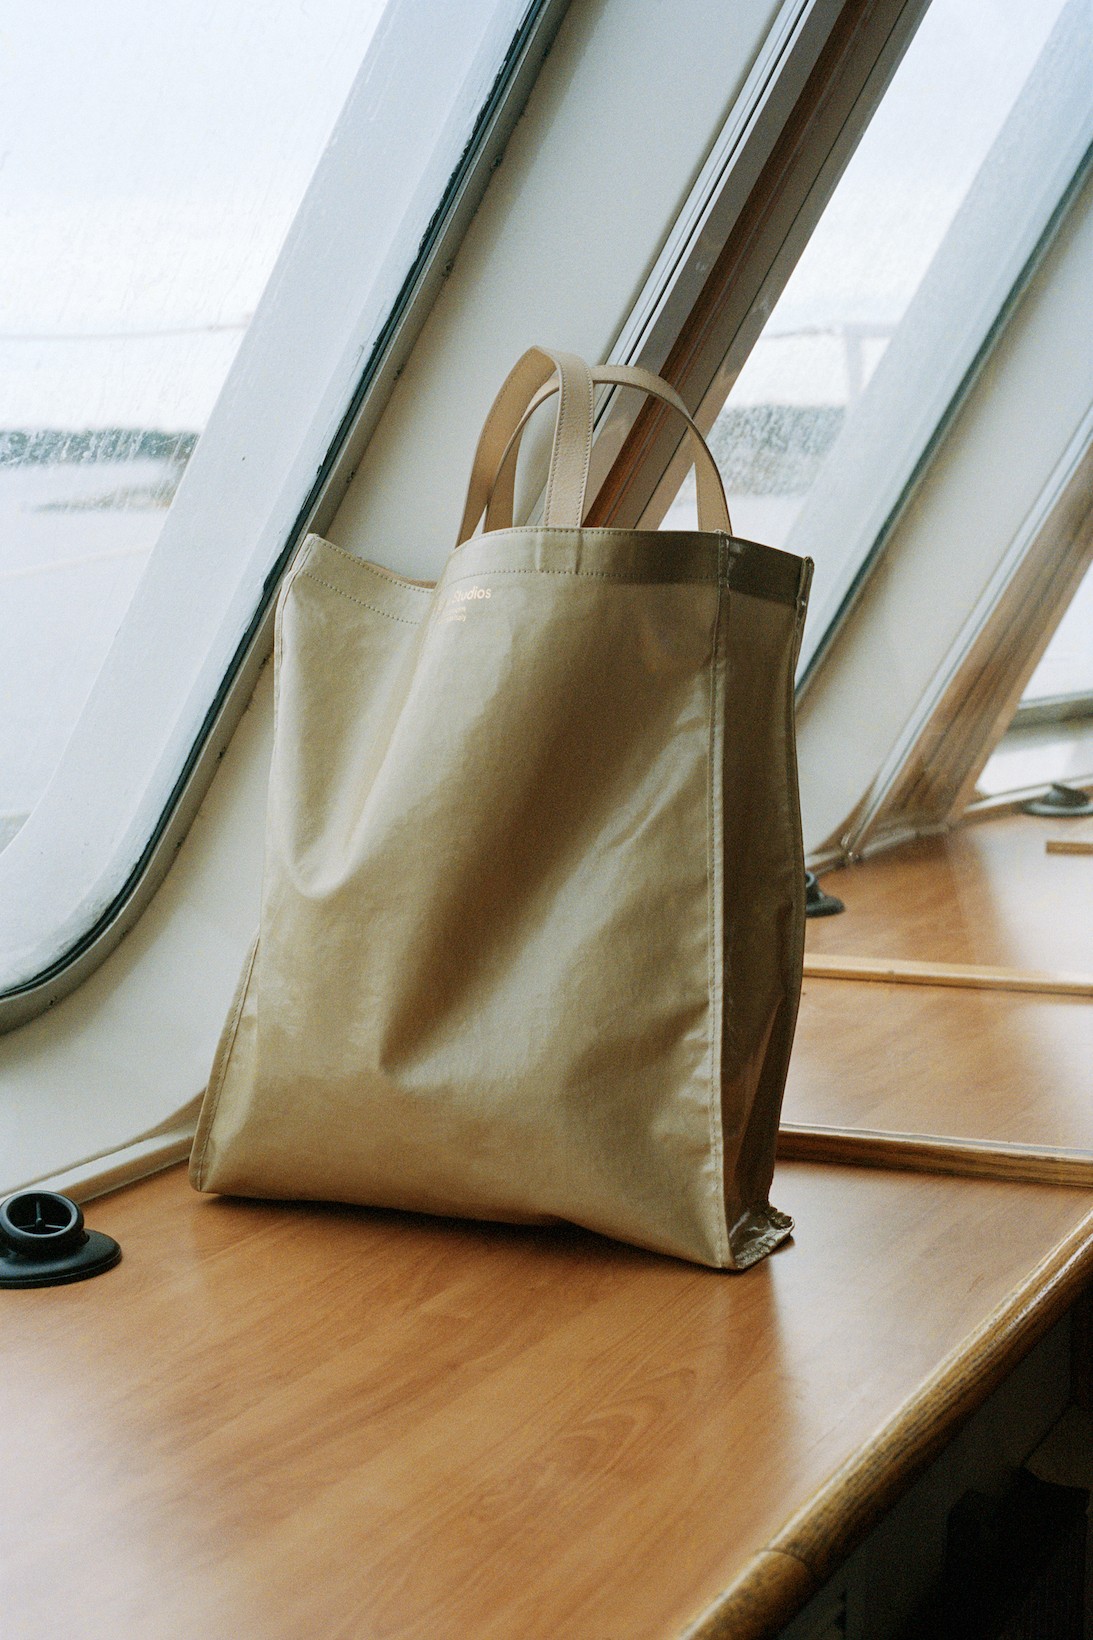 Acne Studios сделал съемку с сумками и головными уборами на острове в Швеции (фото 2)